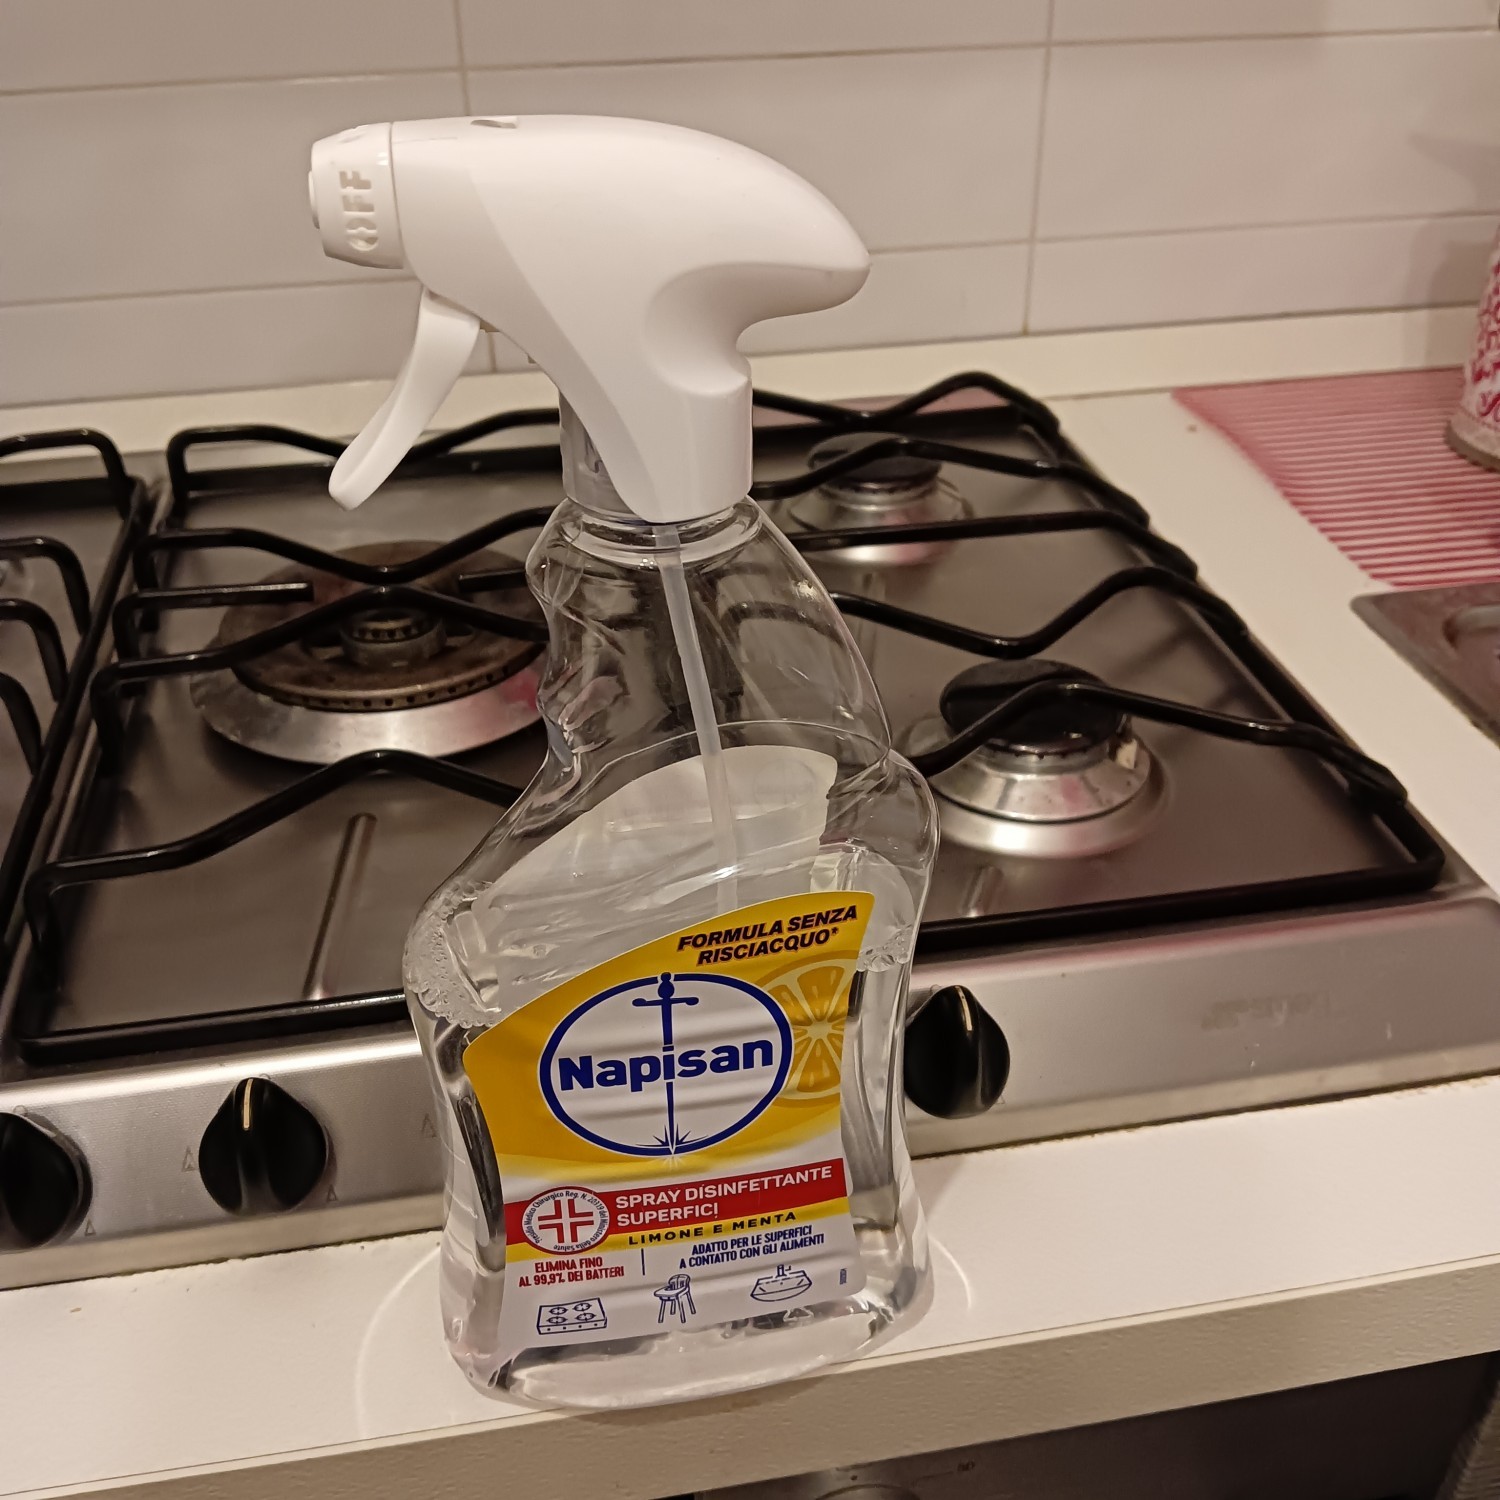 napisan spray igienizzante bagno spray - 750ml - rimuove sporco e batteri:  : pulizia e cura della casa